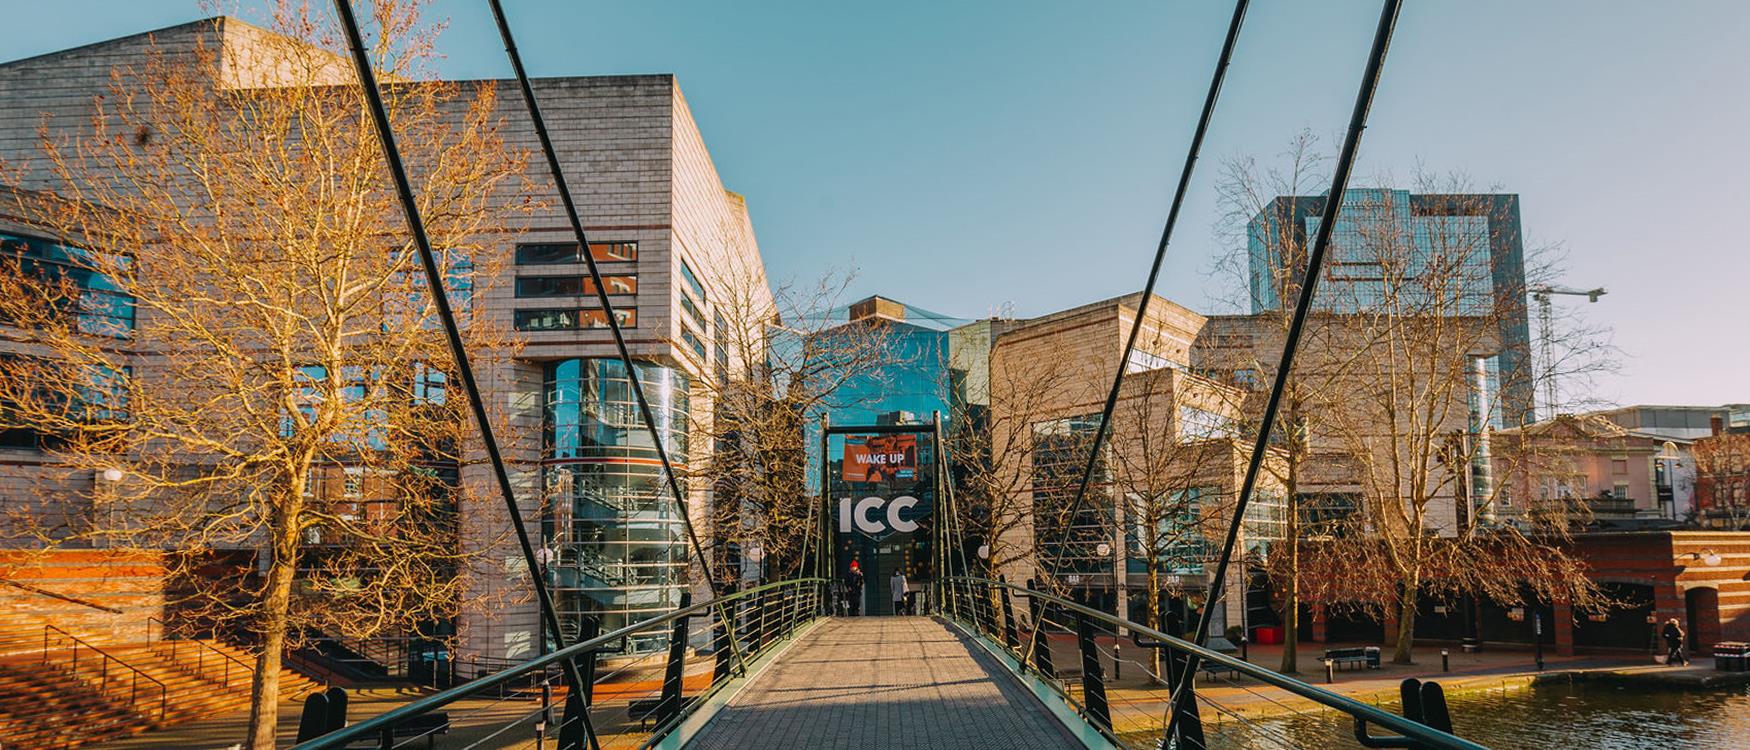 The ICC, Birmingham